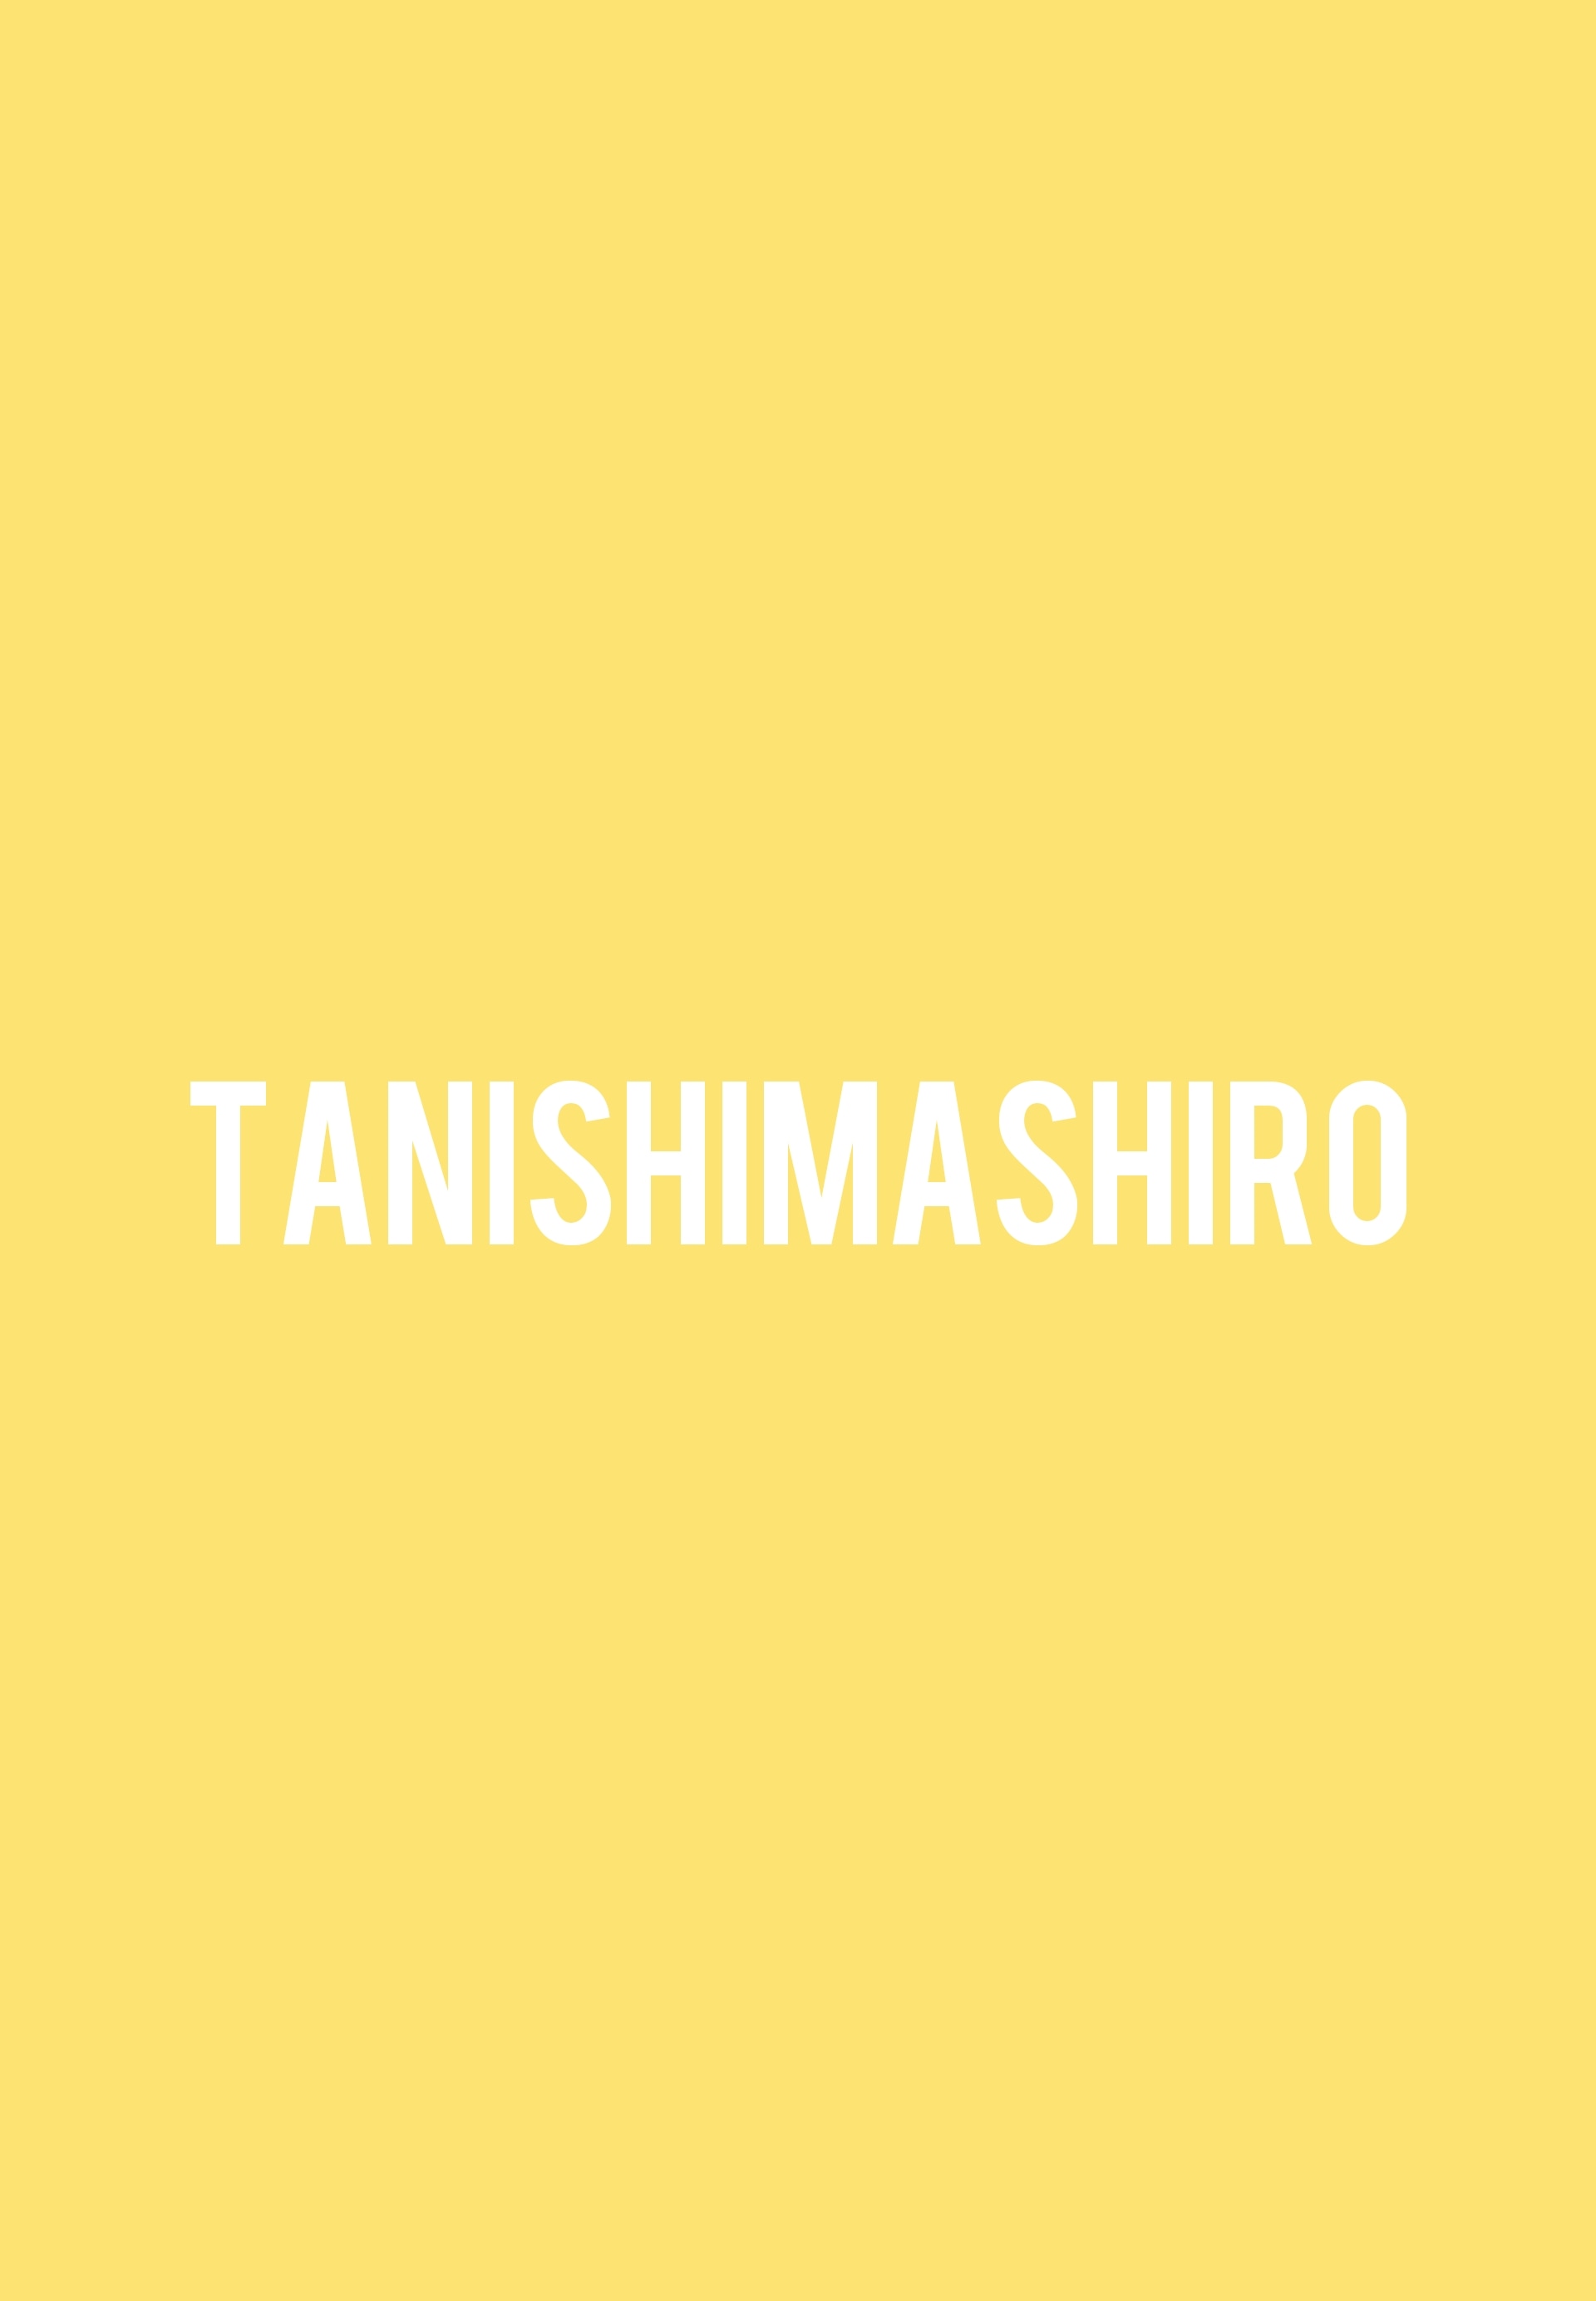 TANISHIMASHIRO